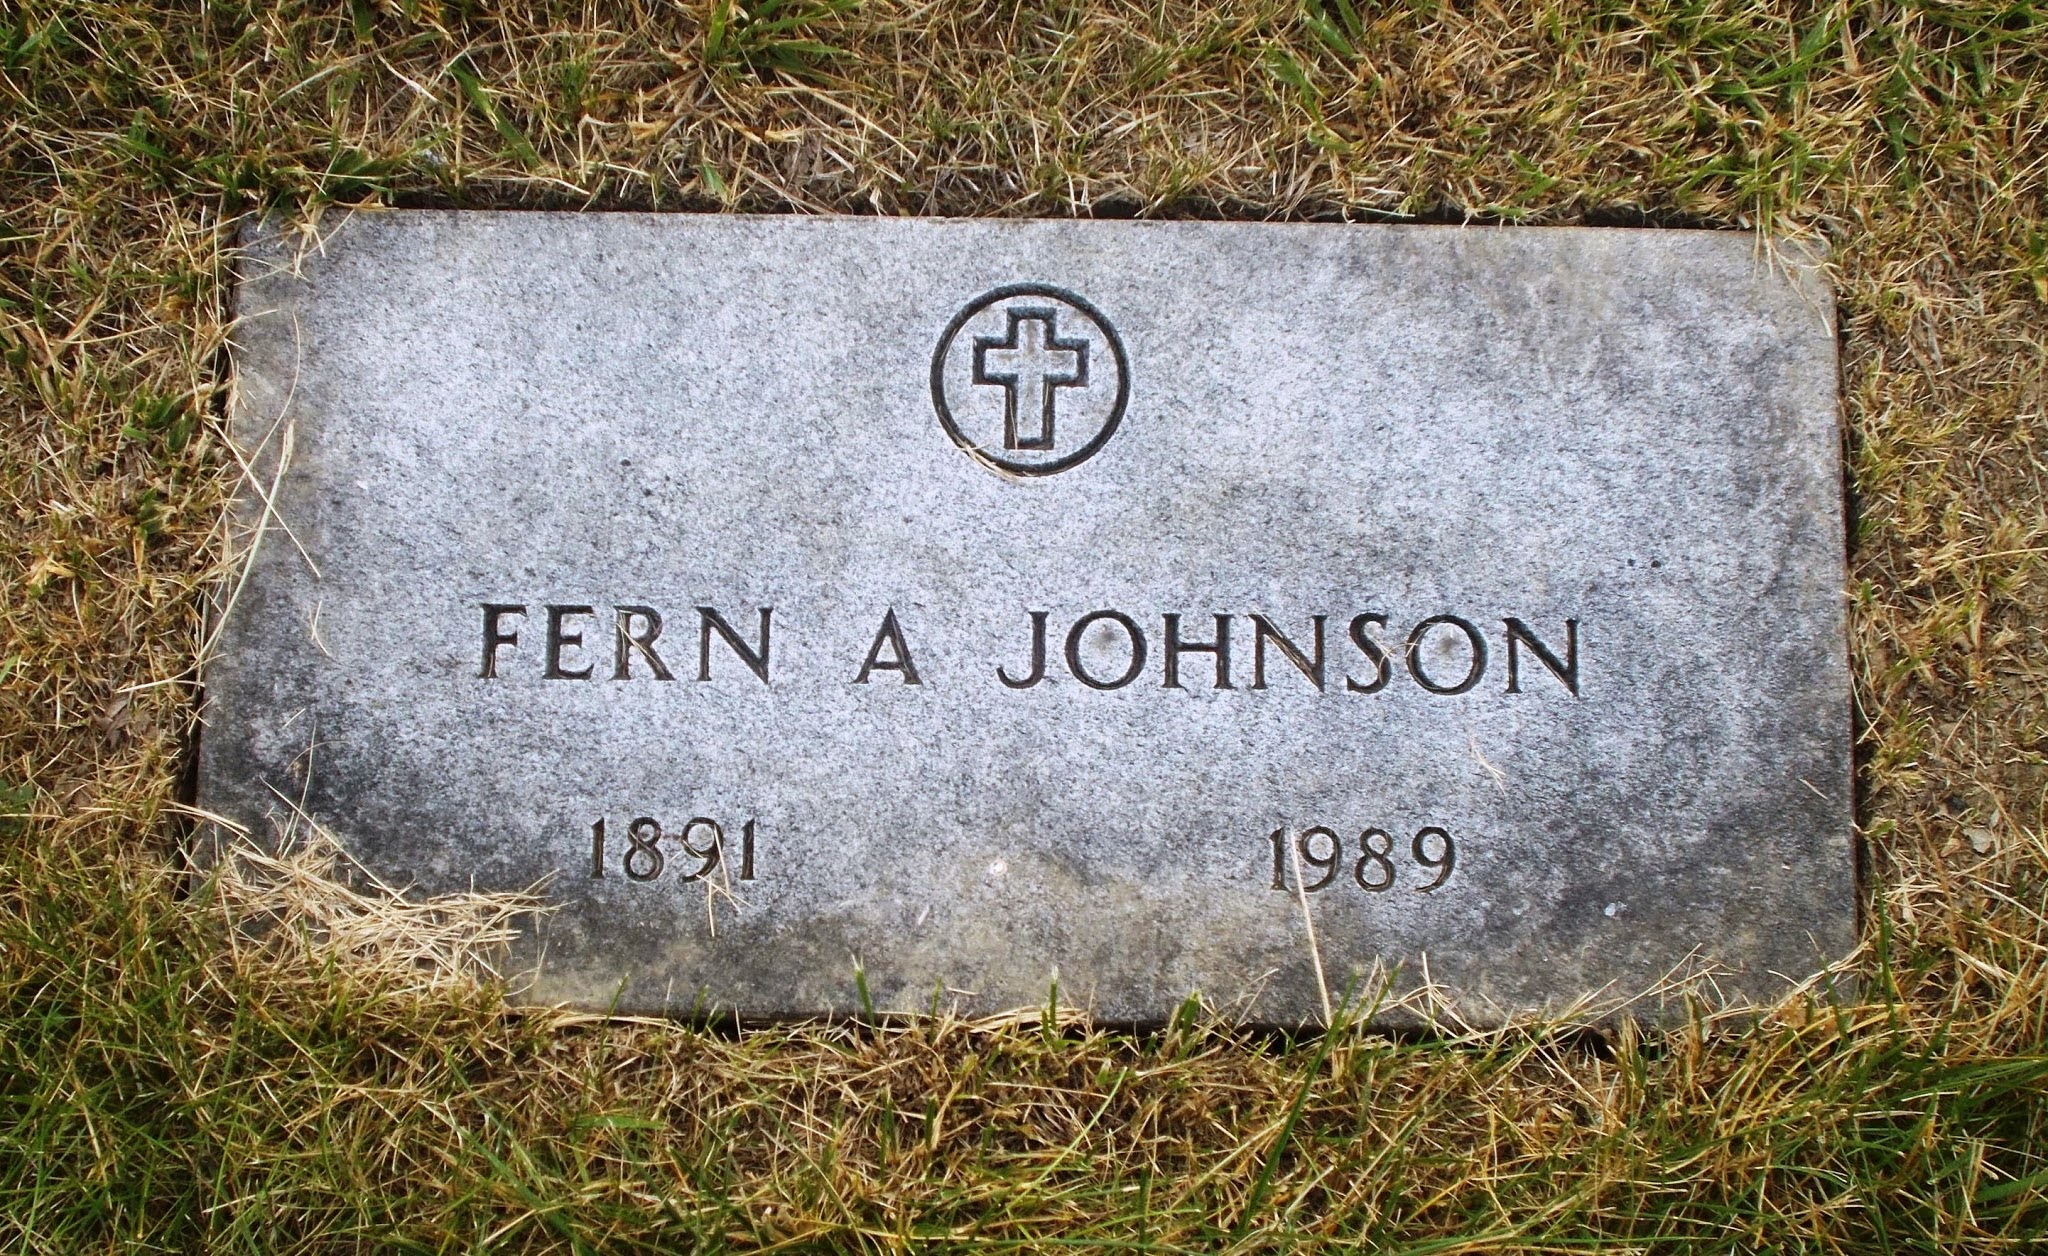 Fern A Johnson